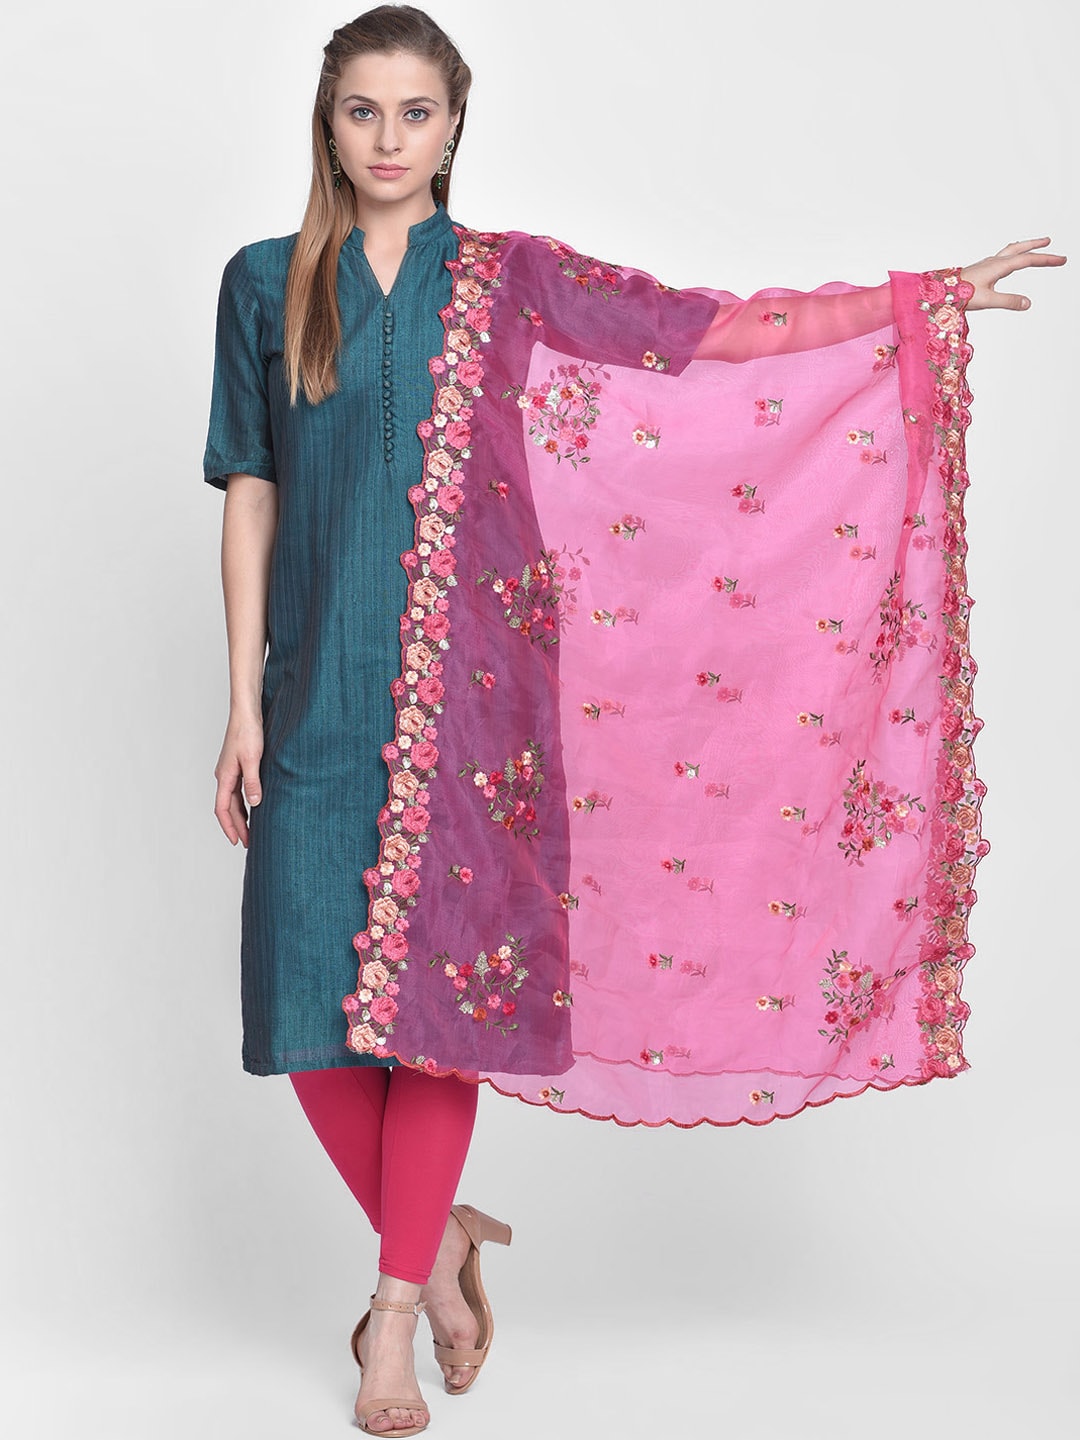 Dupatta Bazaar Pink & Green Embroidered Organza Dupatta Price in India